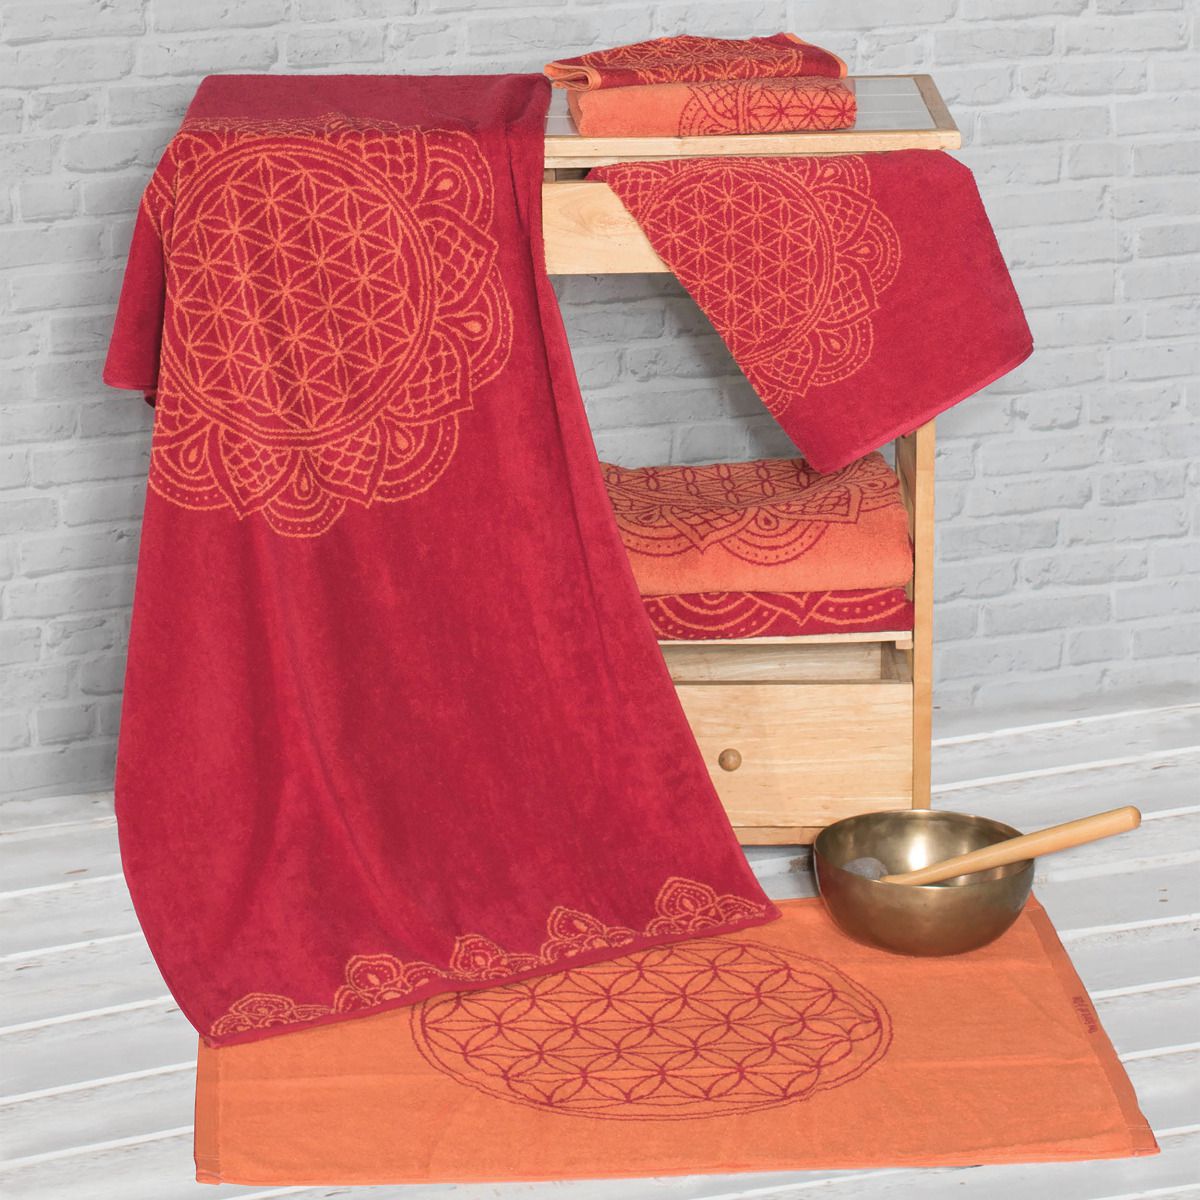 The Spirit of OM ručník z bio bavlny, červeno-oranžový, 30x46 cm